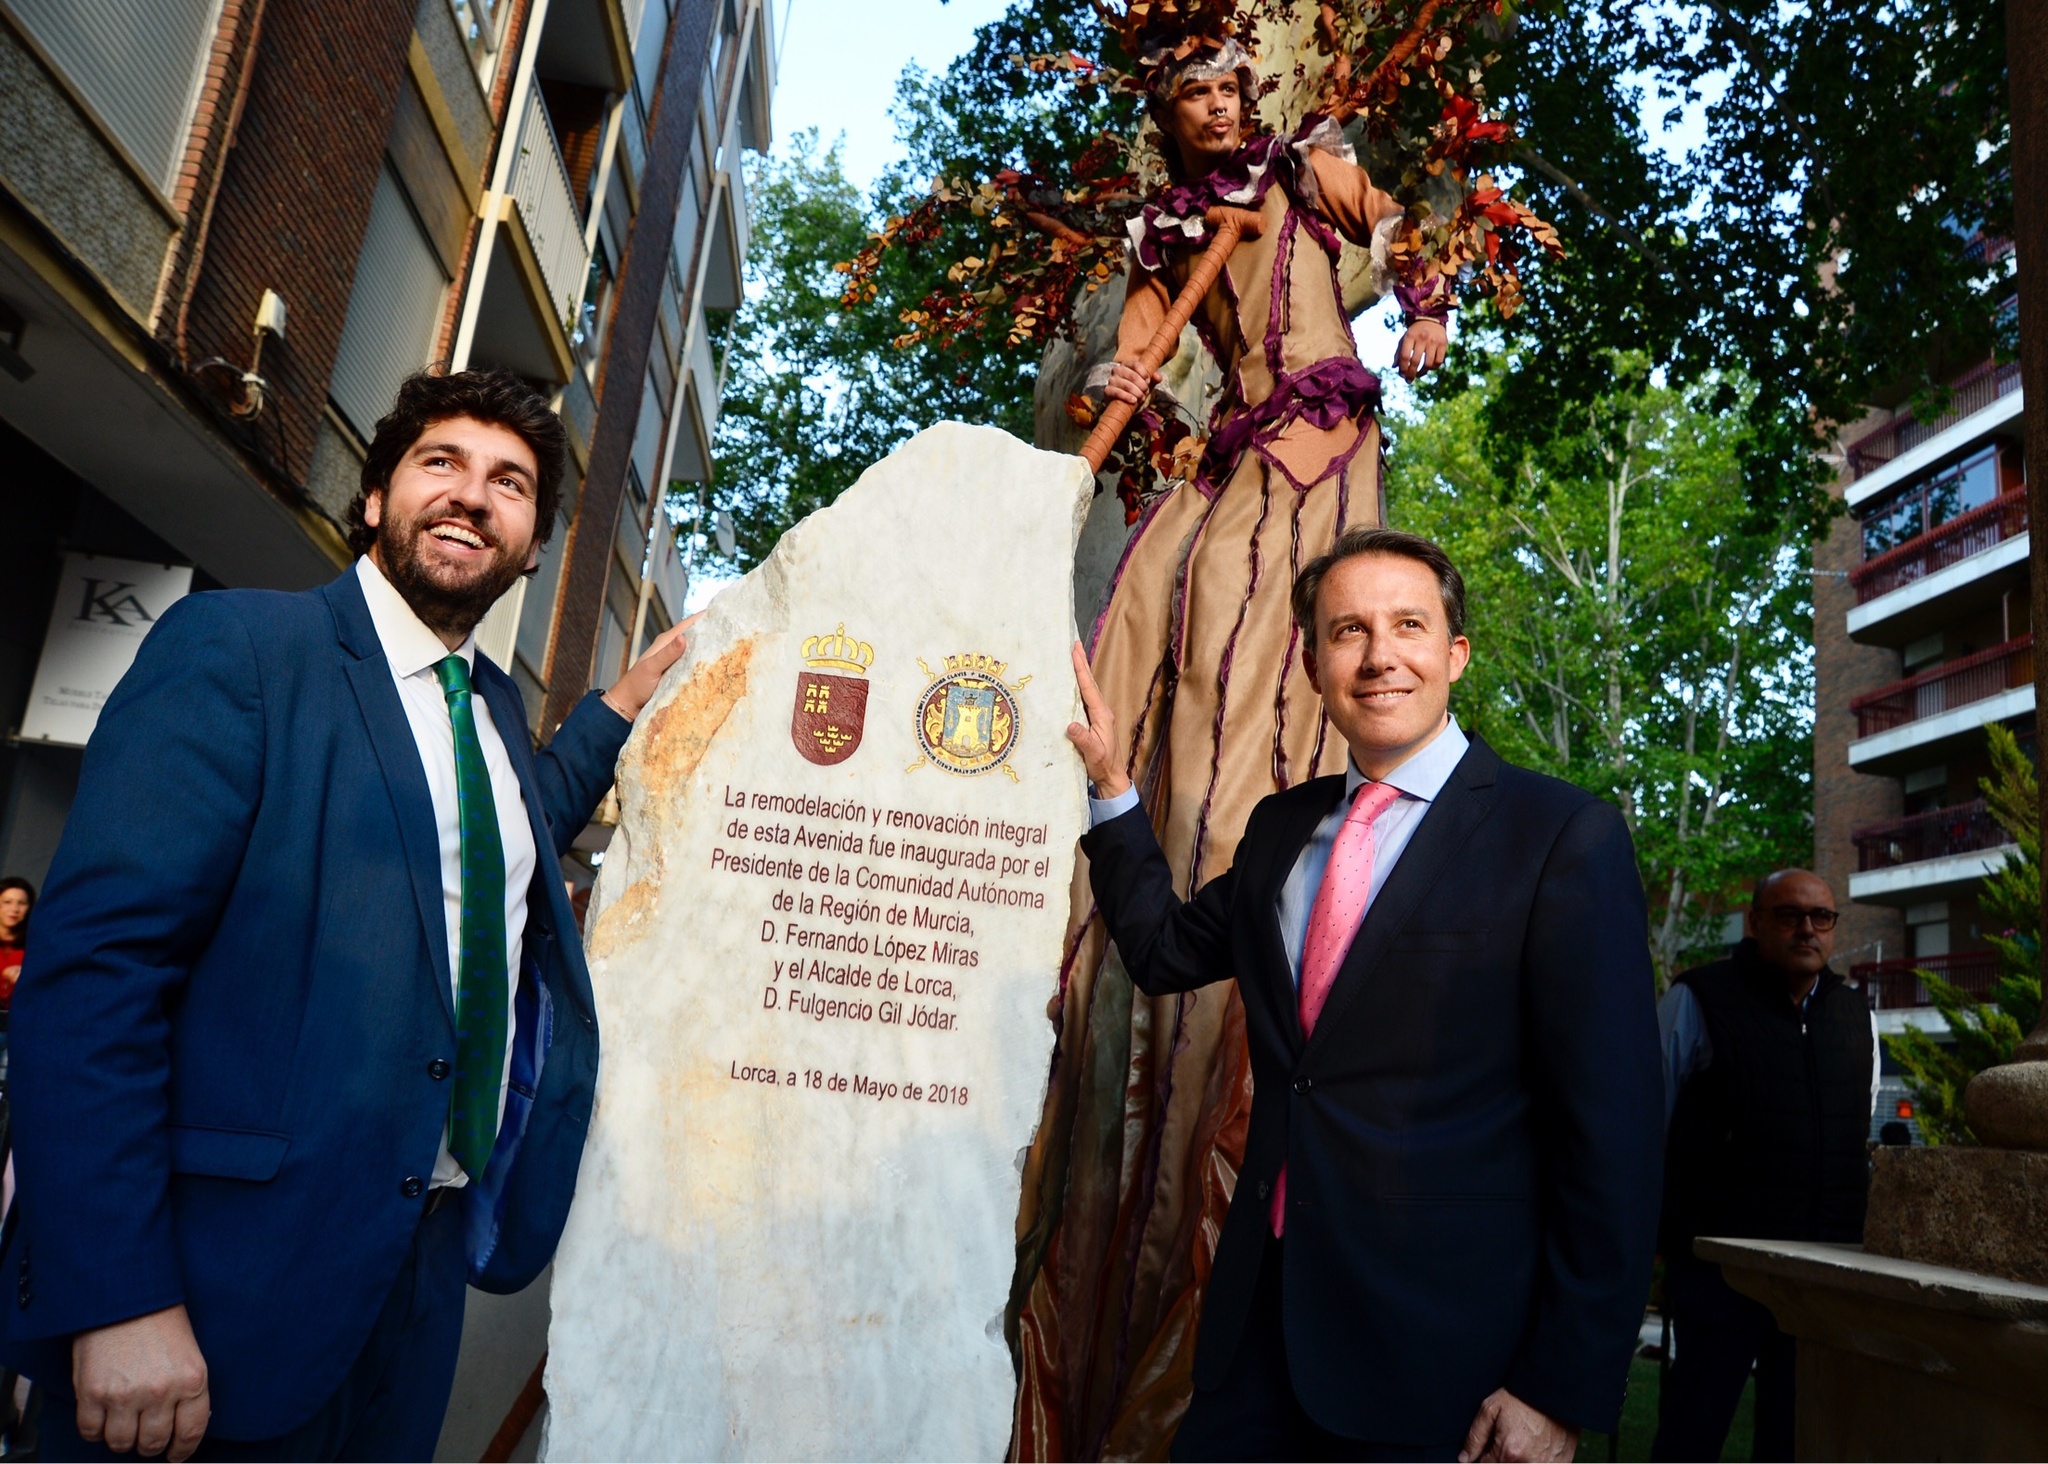 El presidente Fernando López Miras inaugura la avenida Juan Carlos I de Lorca, tras las obras de remodelación y renovación integral